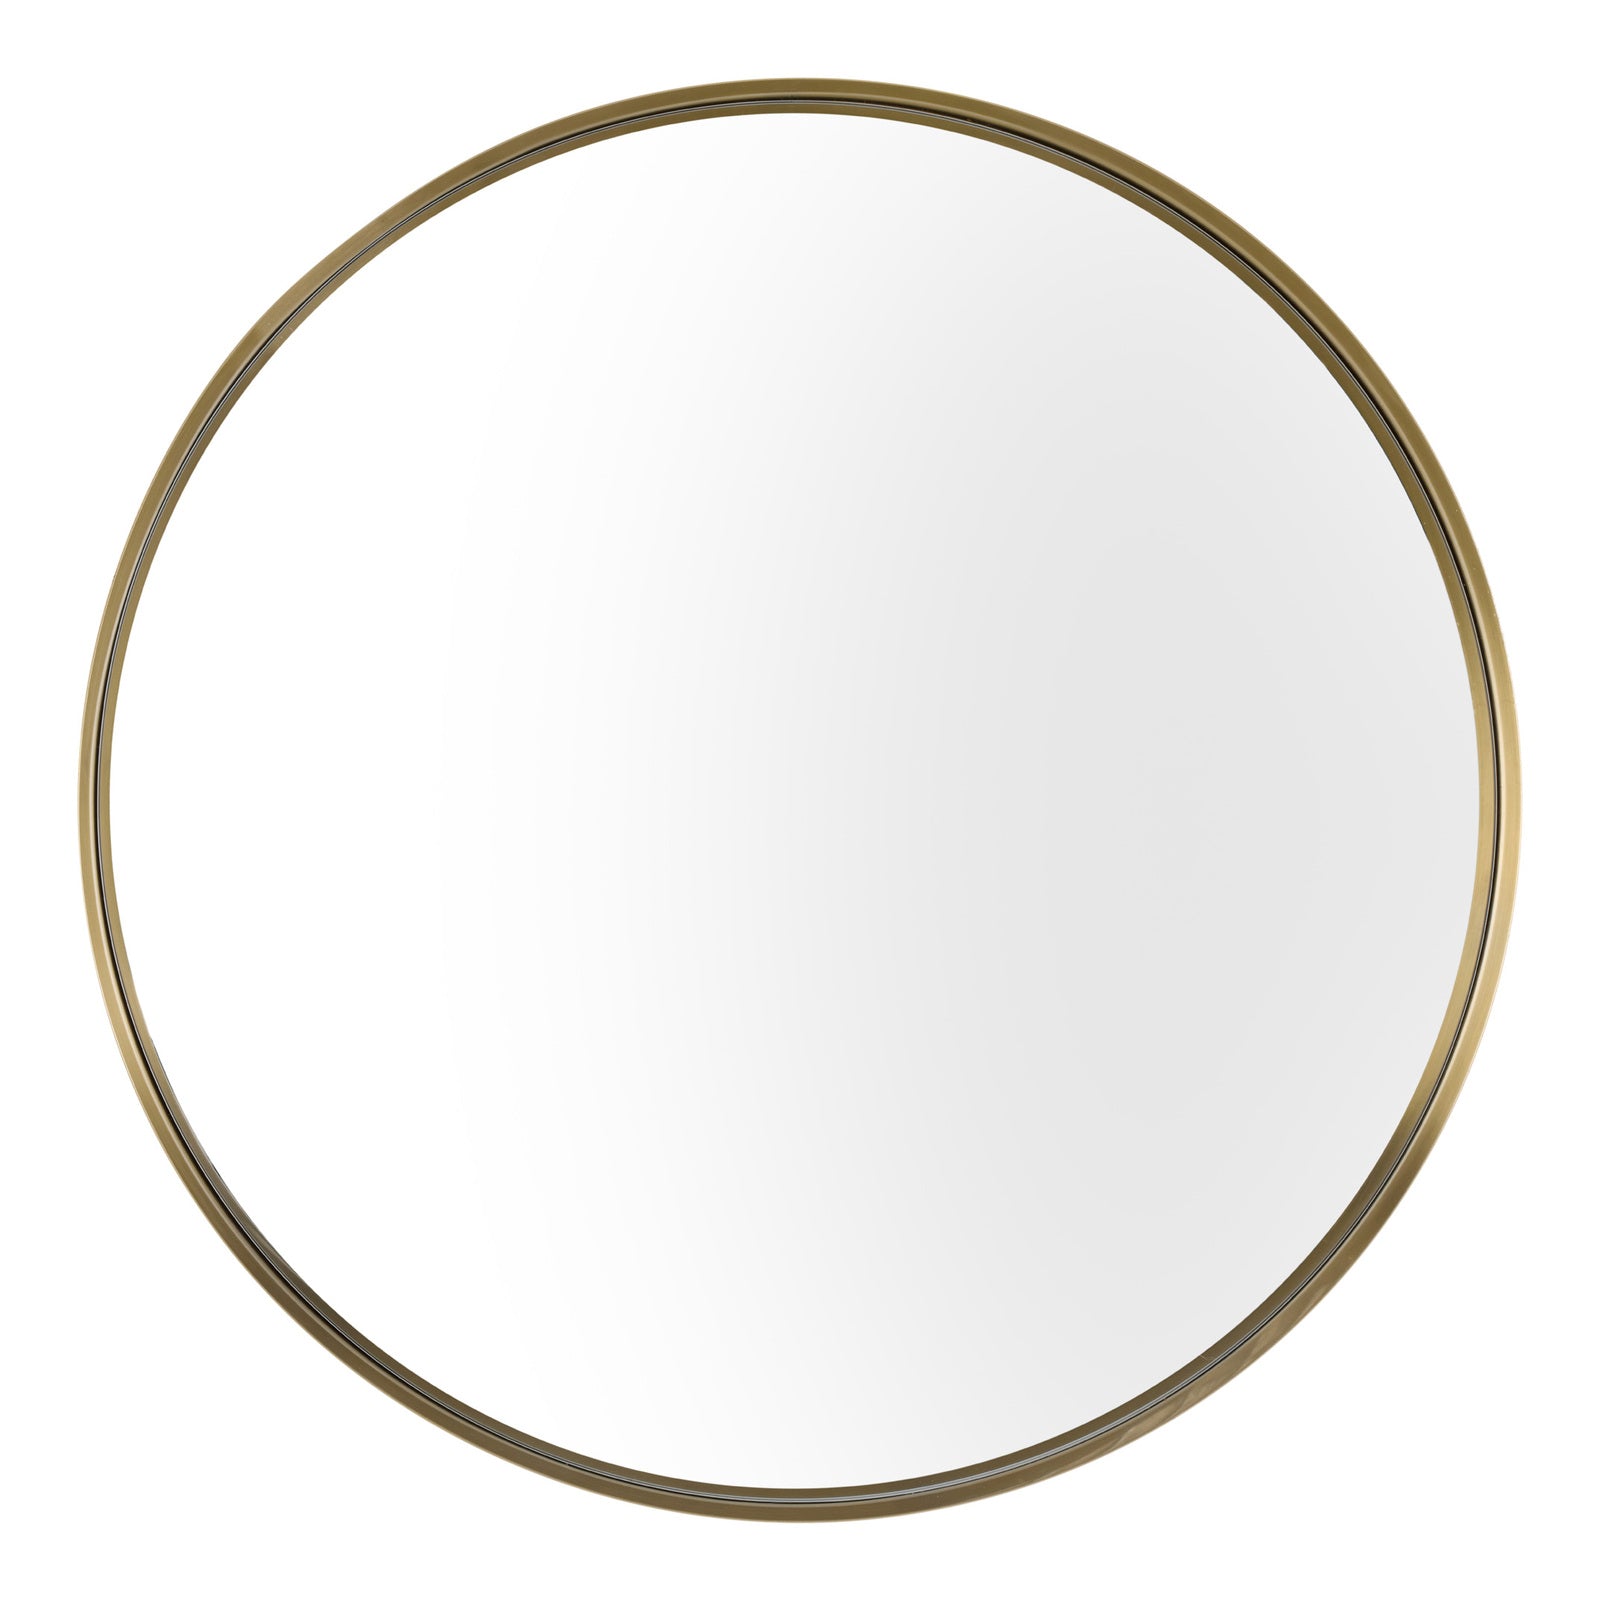 GEMMA 80cm Stainless Steel Mirror - Champagne Gold